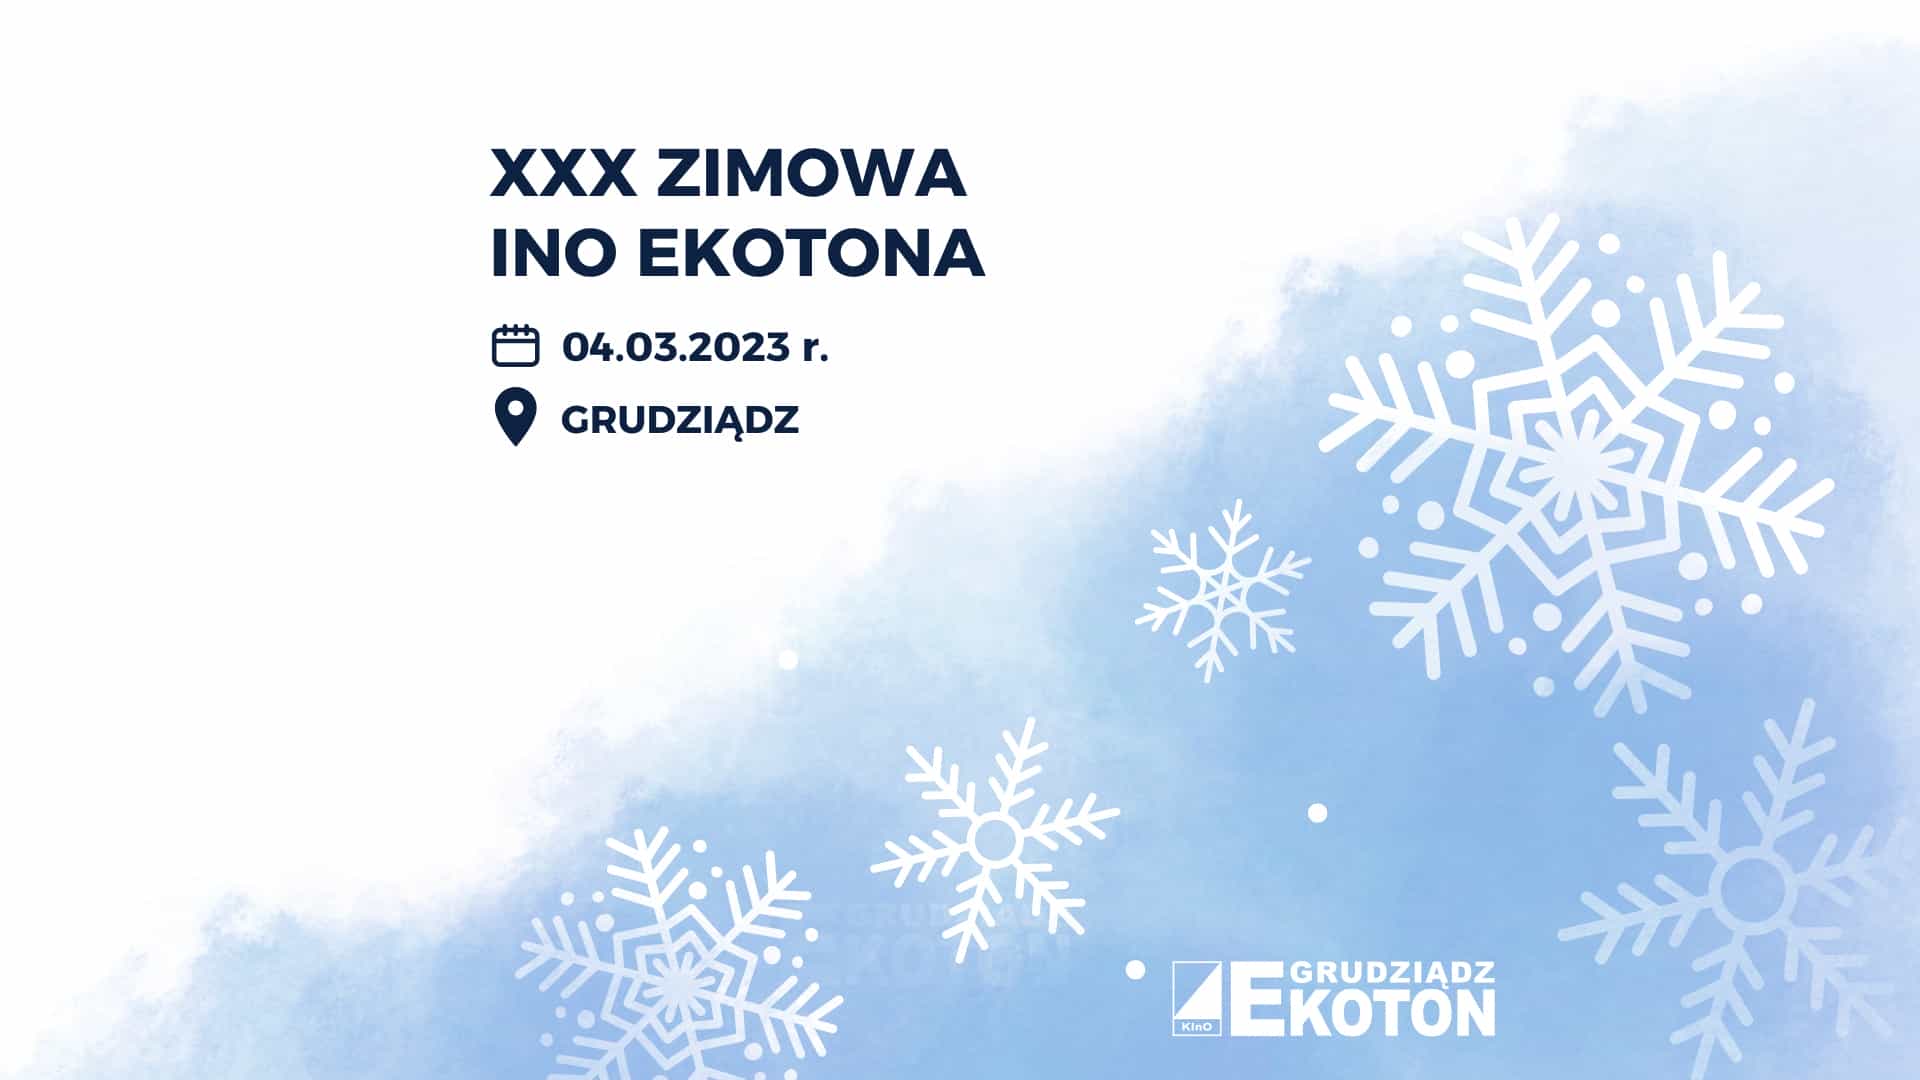 XXX Zimowa Impreza na Orientację EKOTONA 2023